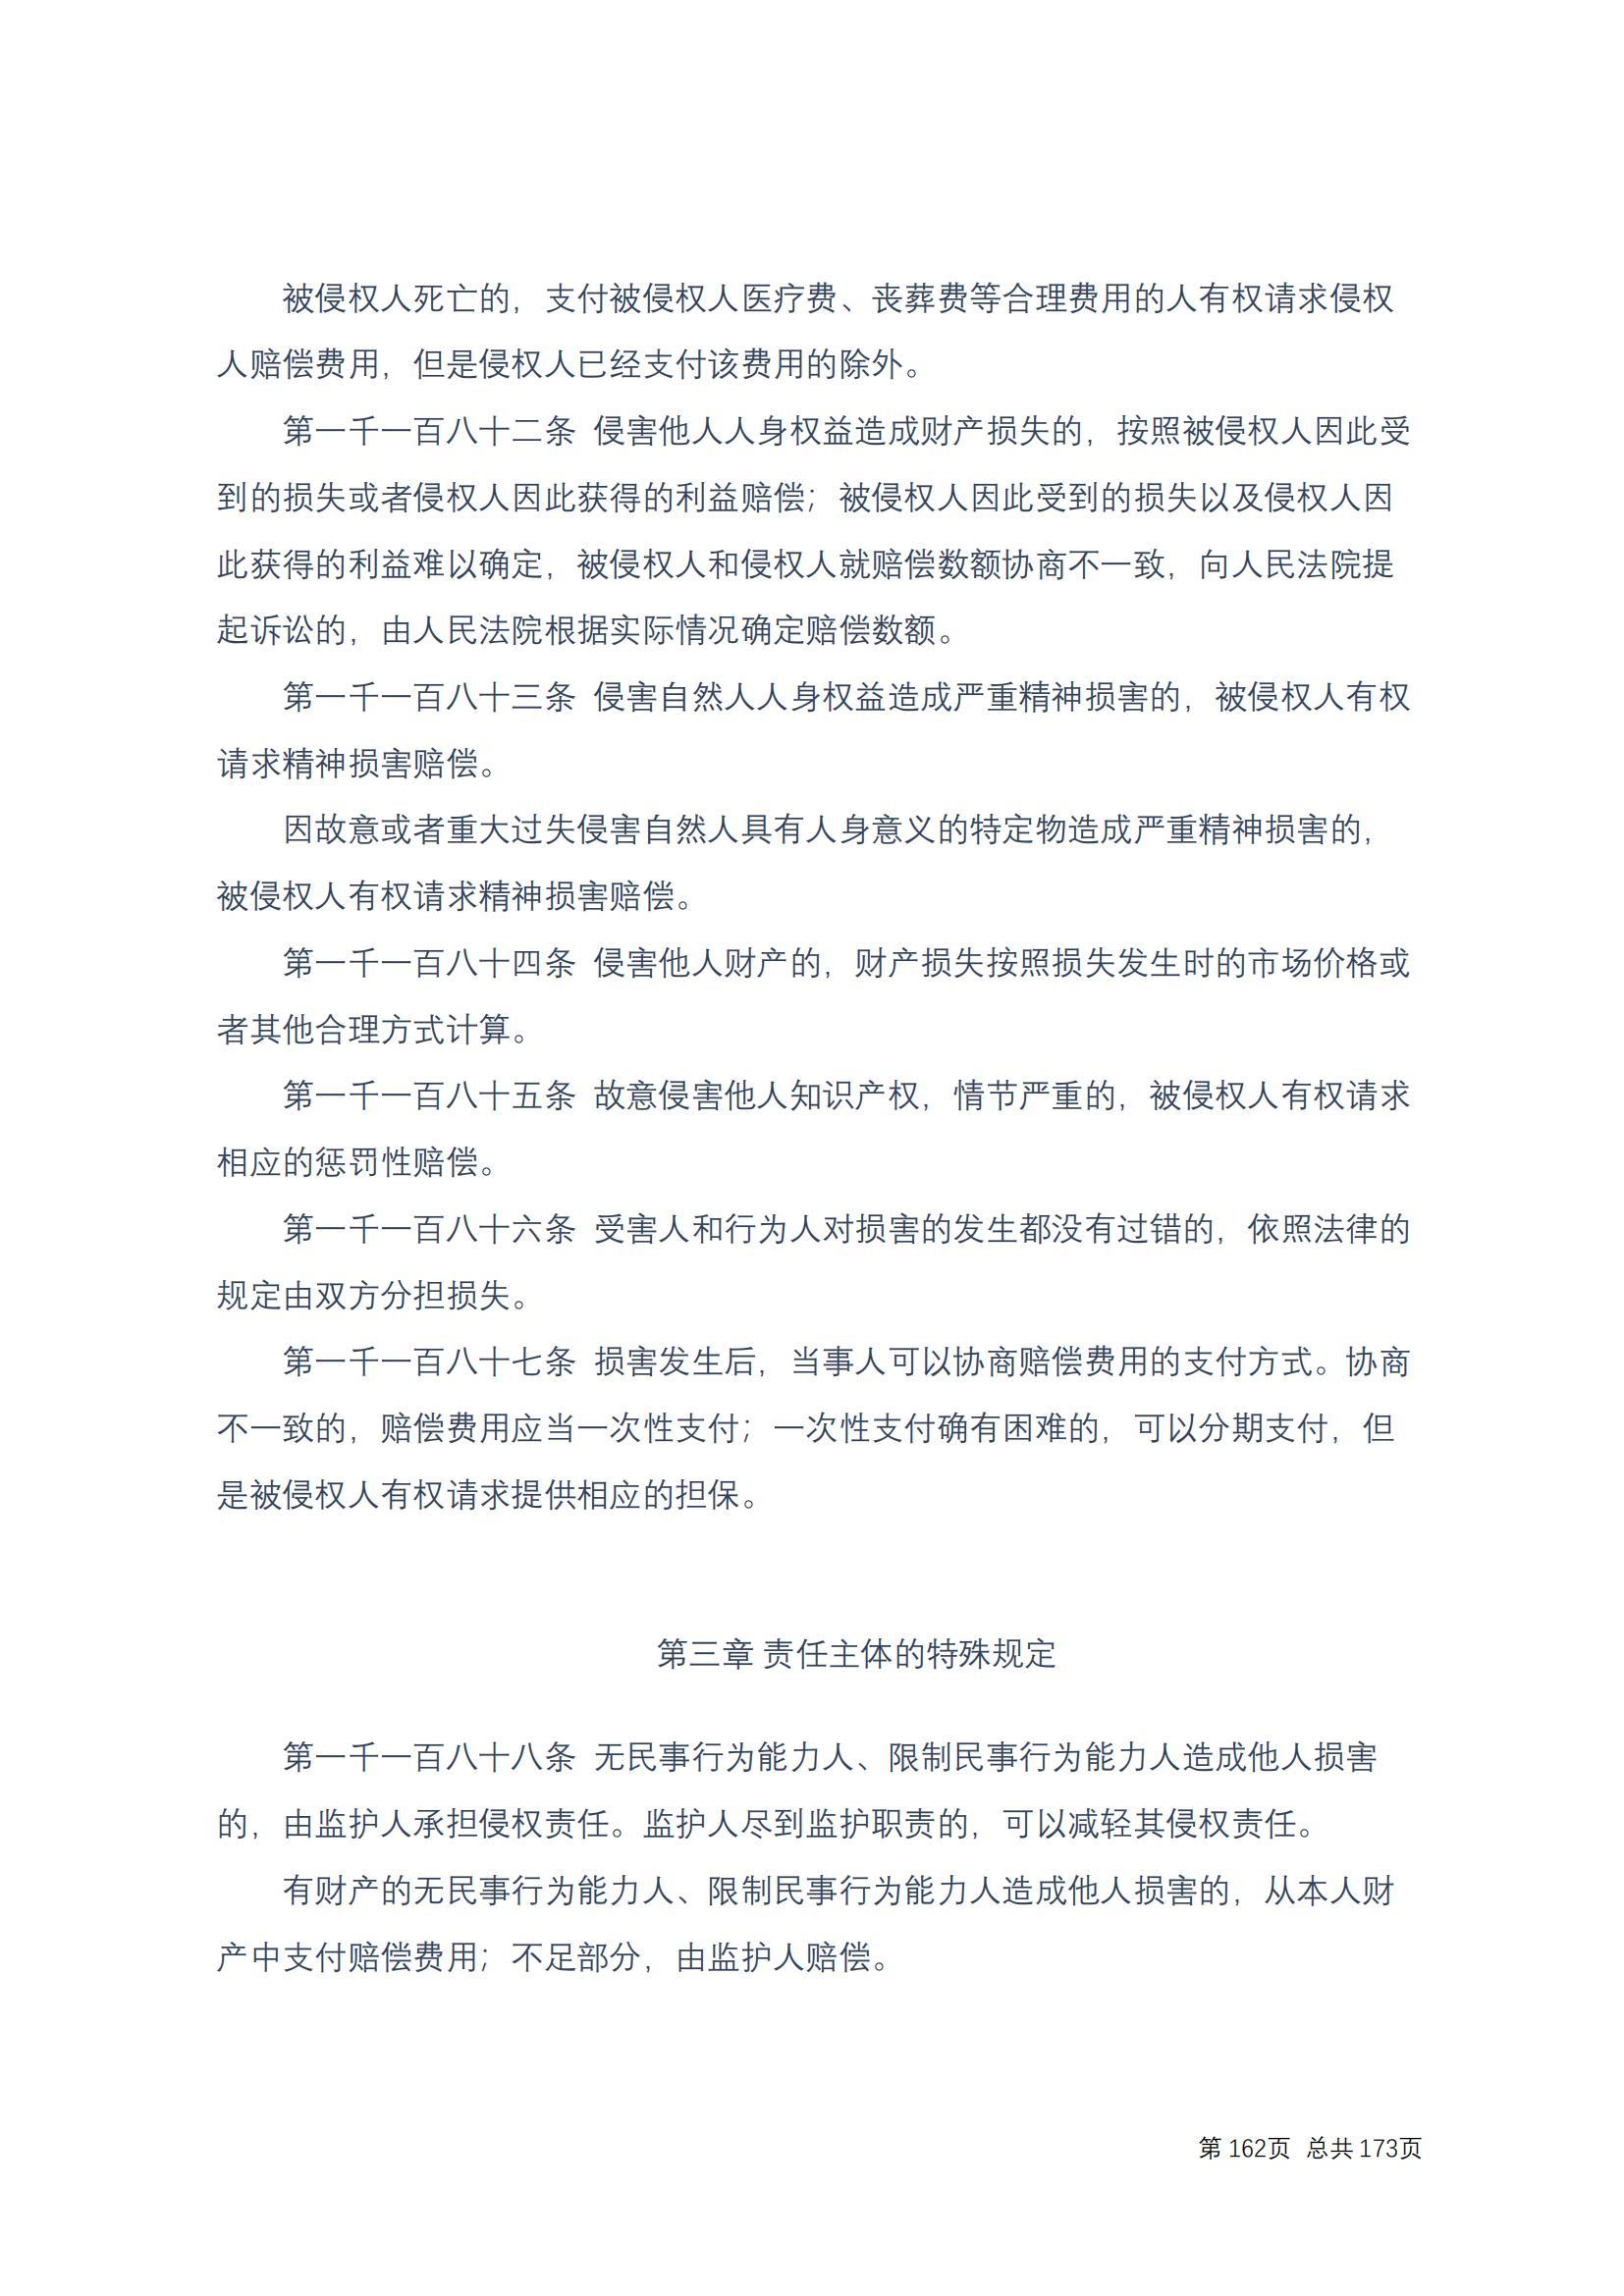 中华人民共和国民法典 修改过_161